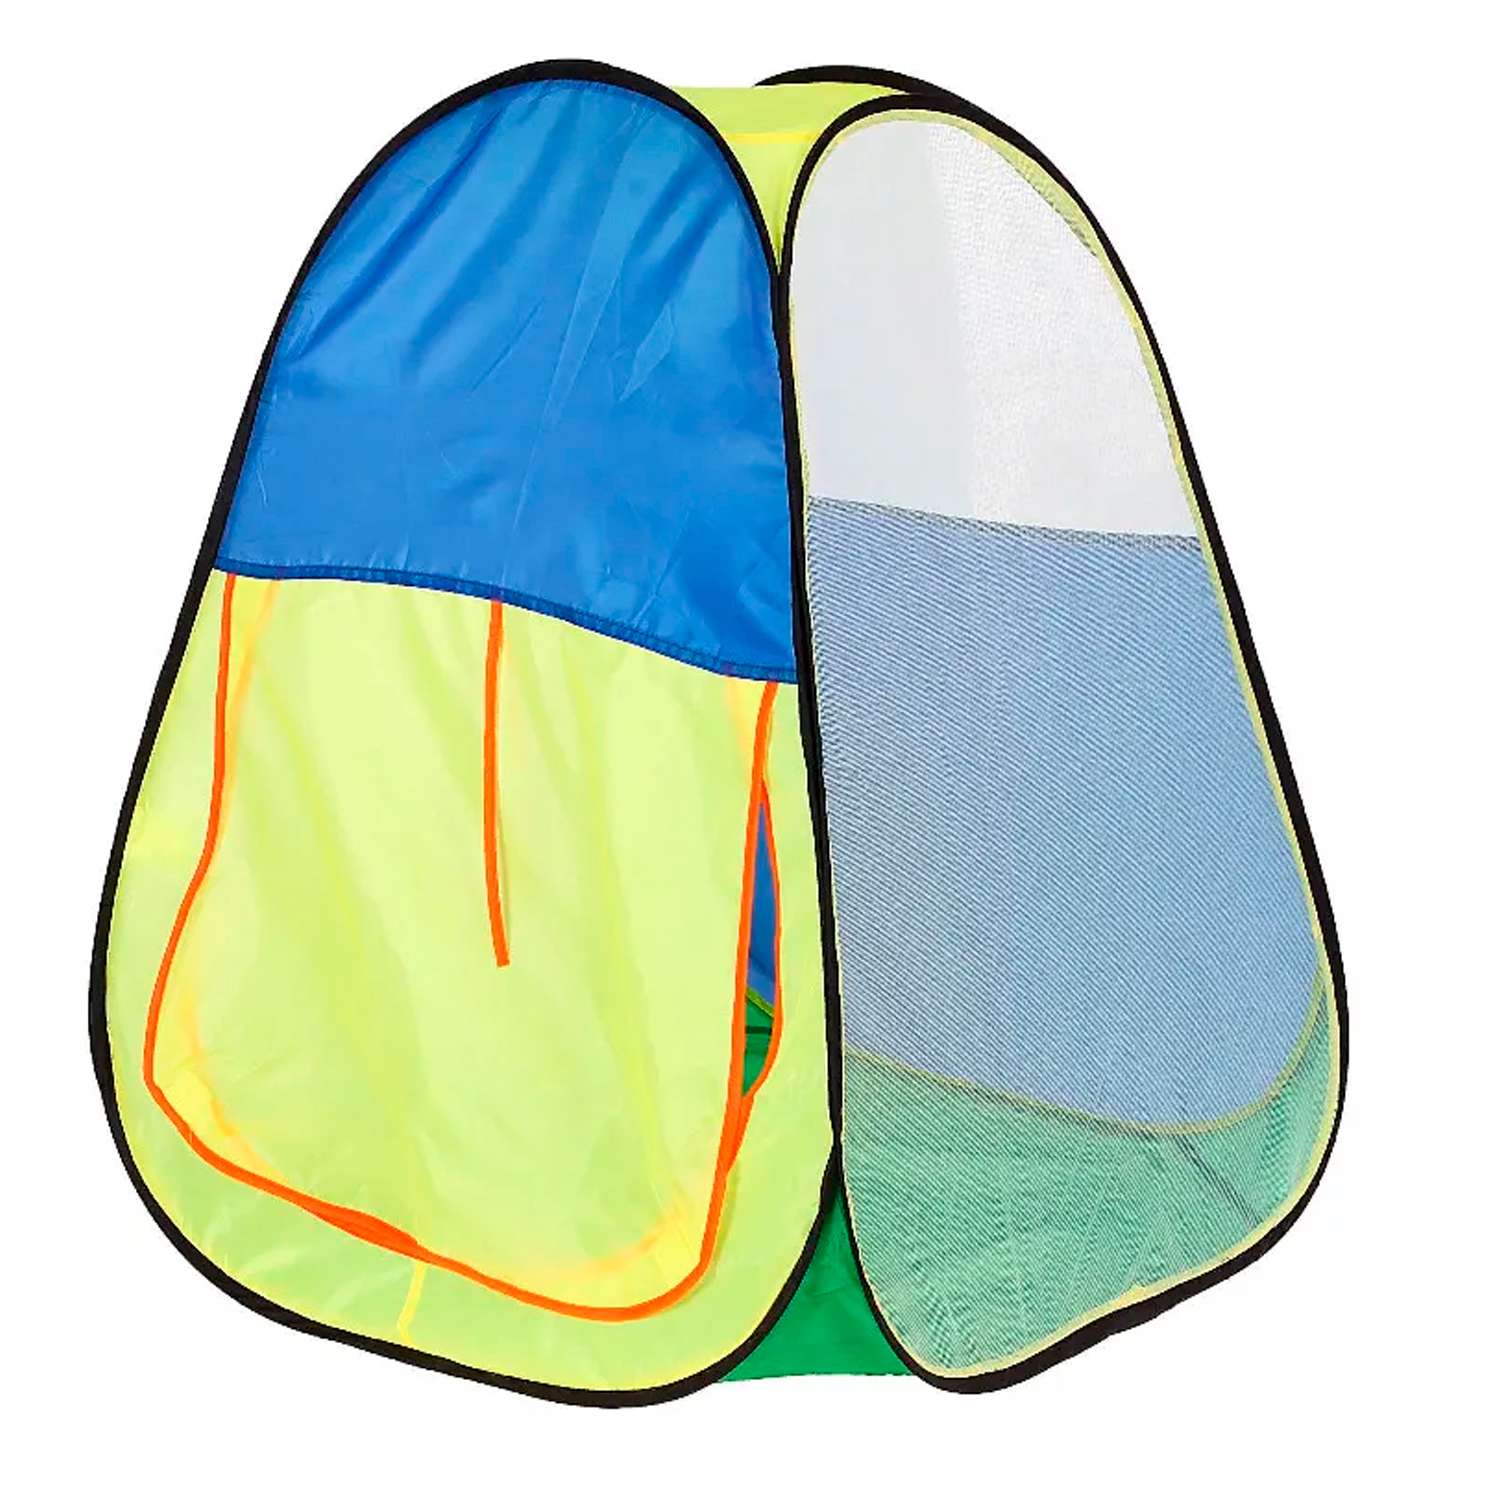 Игровая палатка Avocadoffka разноцветная - фото 2